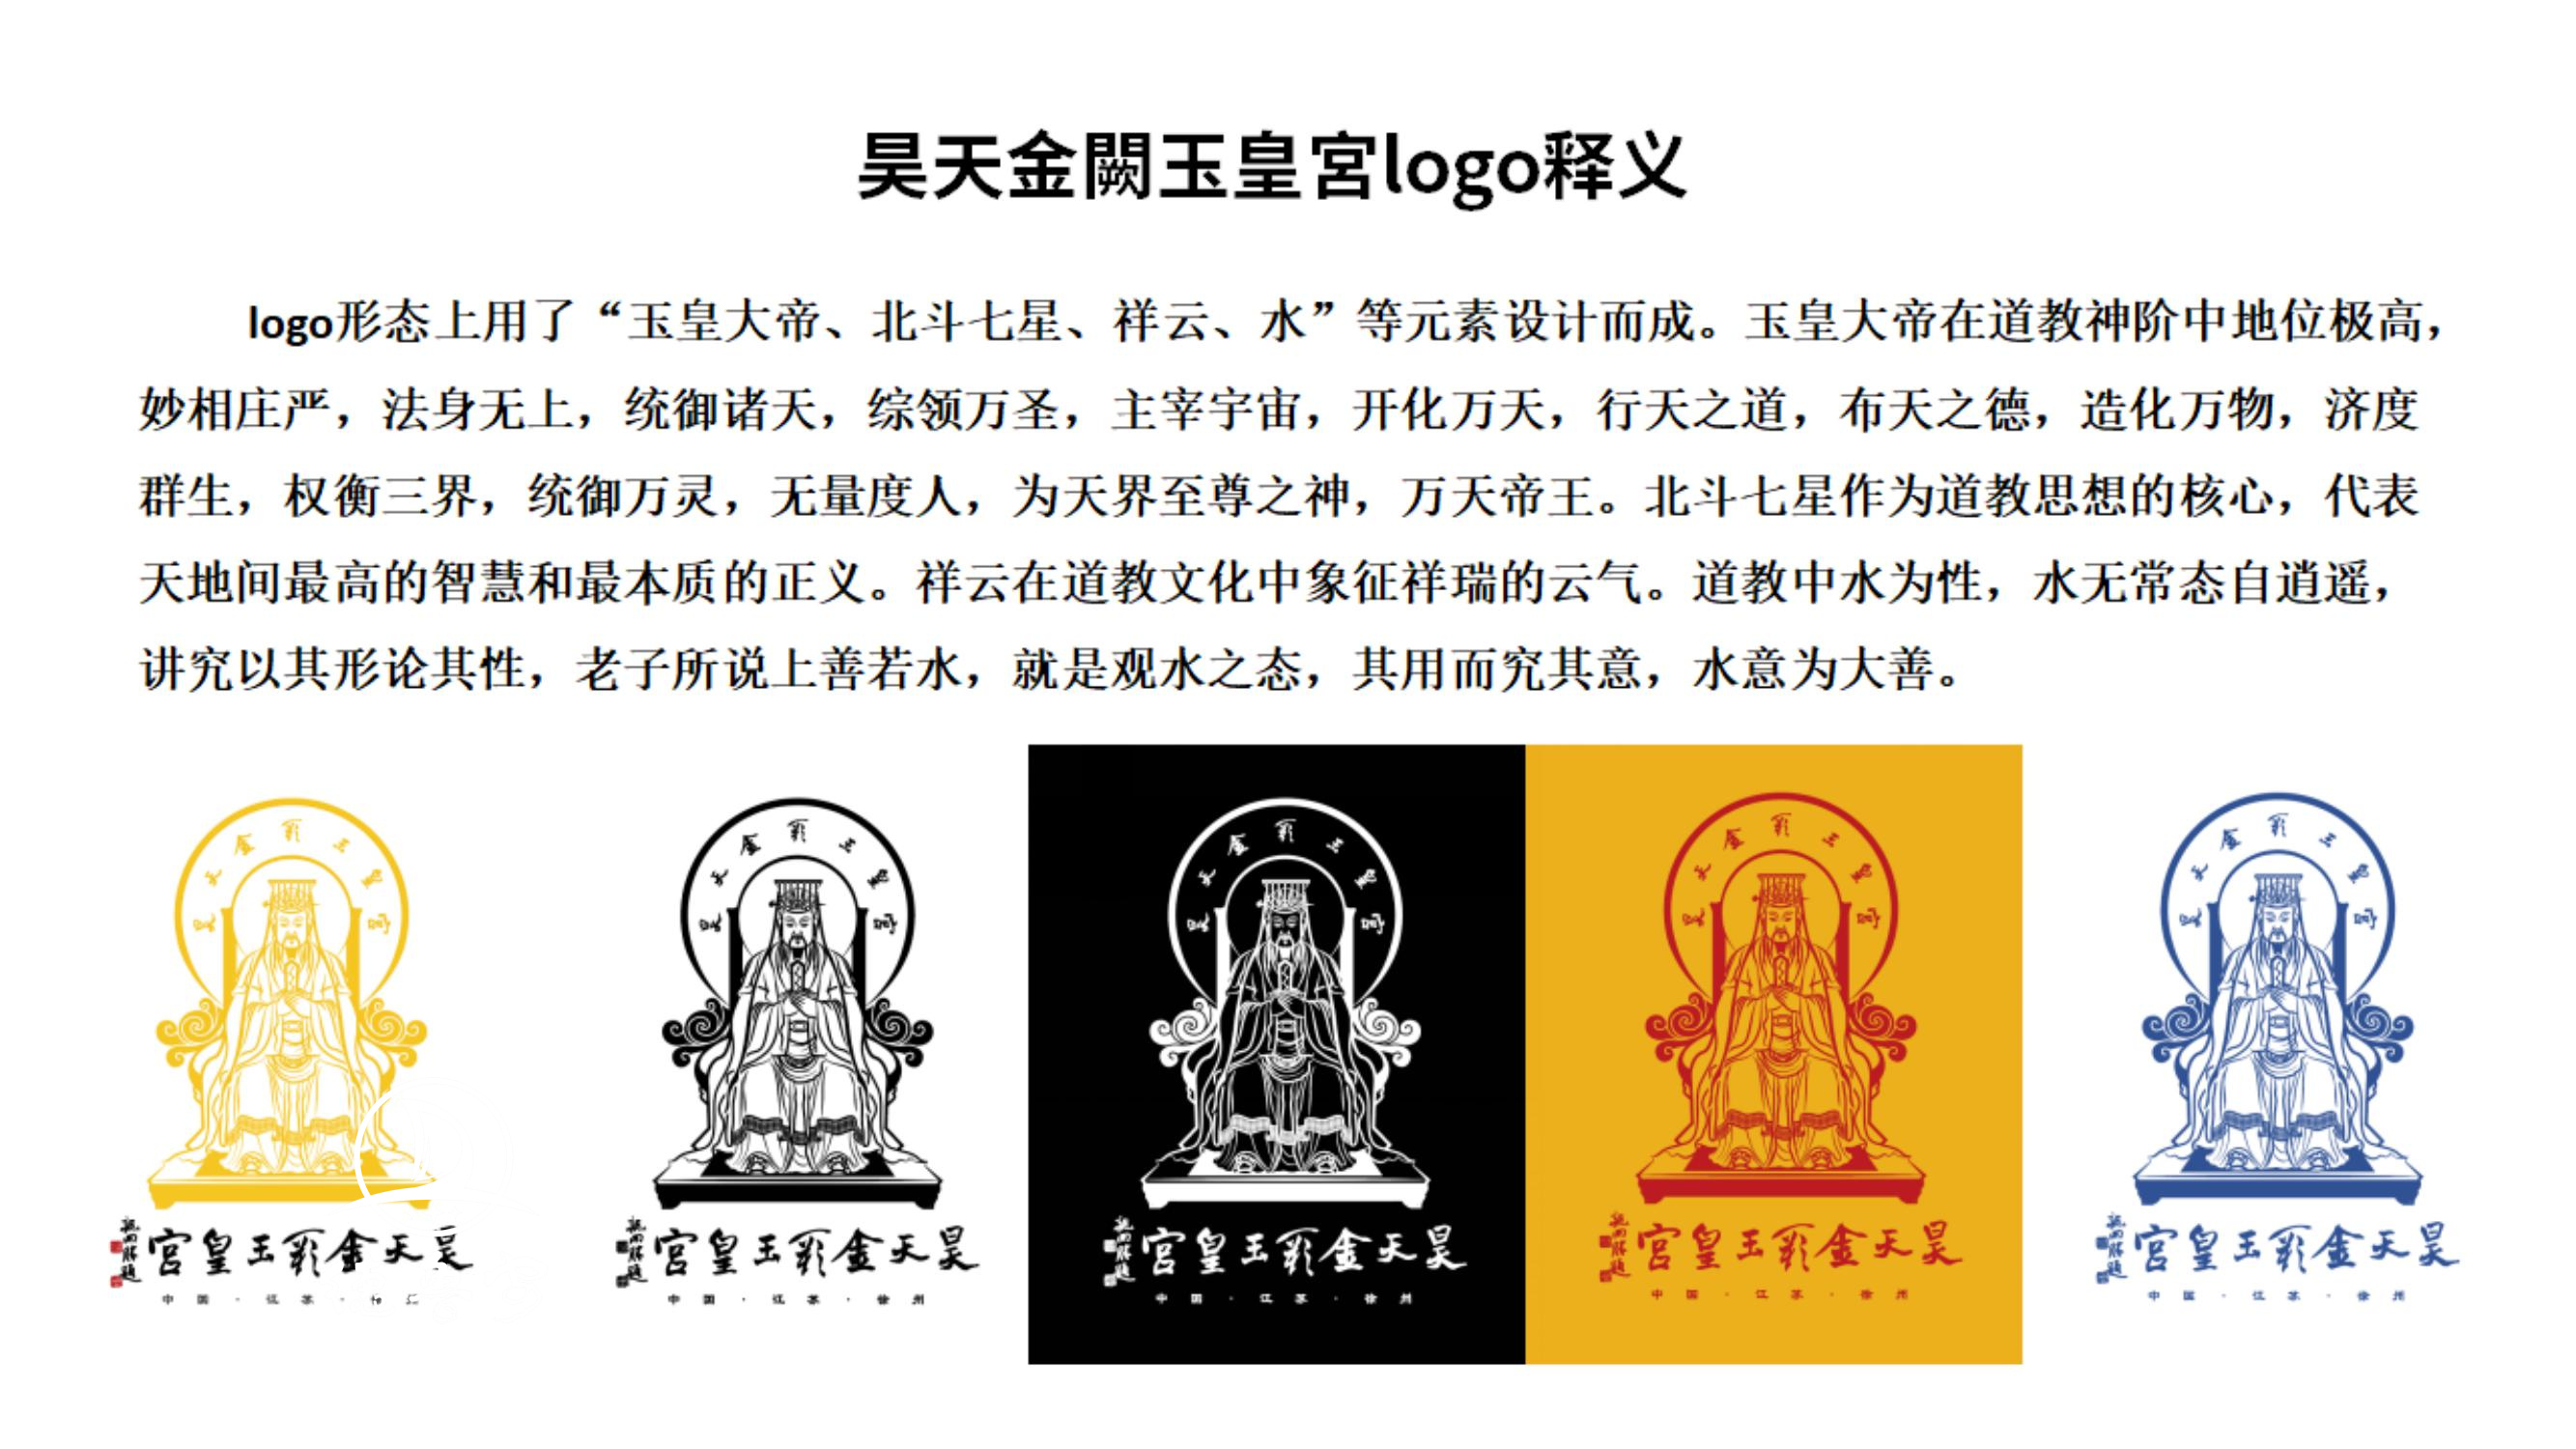 玉皇宫 logo定稿方案_03.jpg